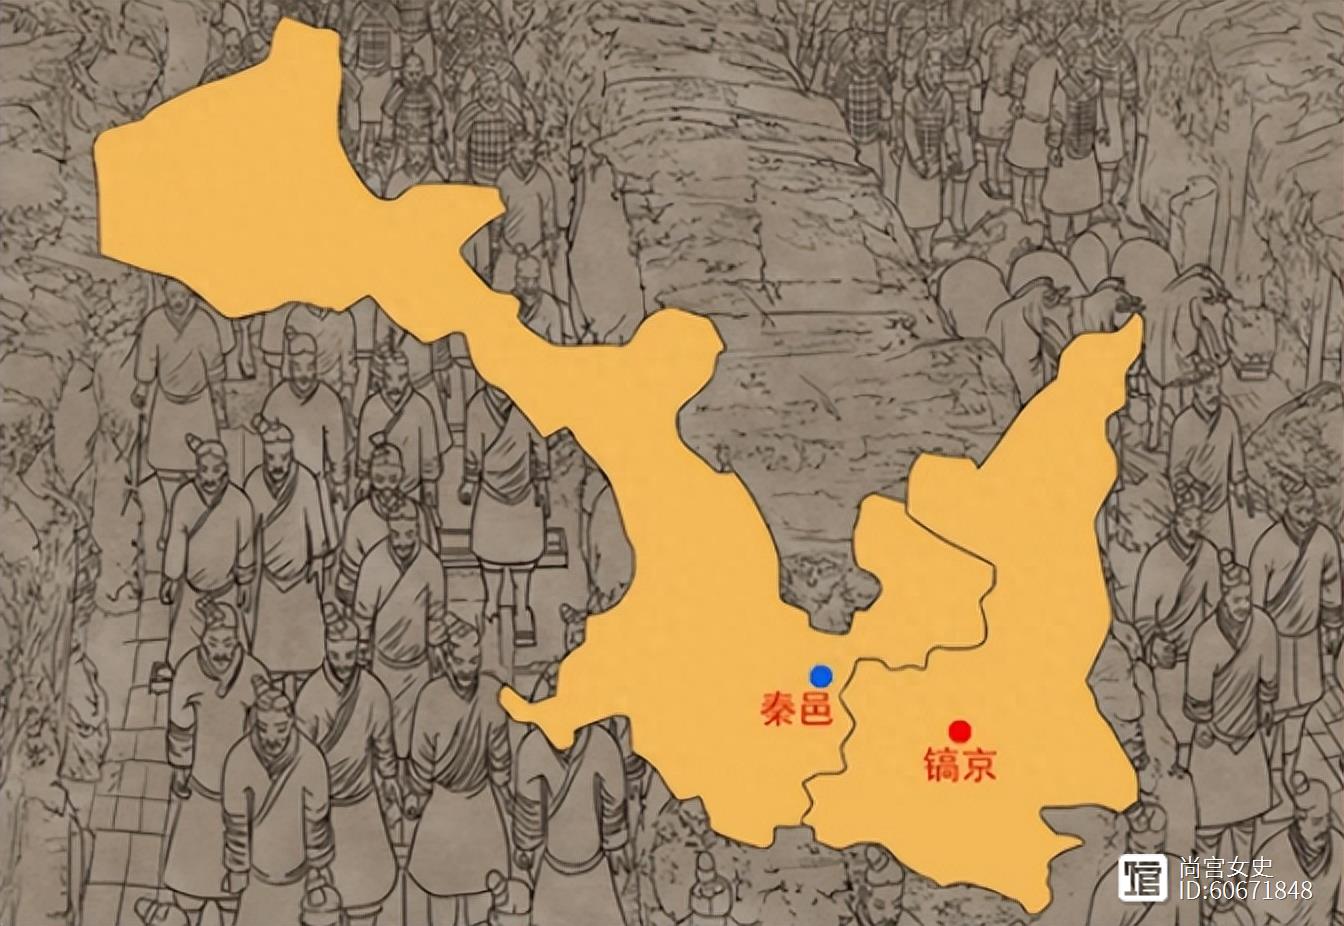 西周初期分封时并无秦国，那秦国是怎么来的？